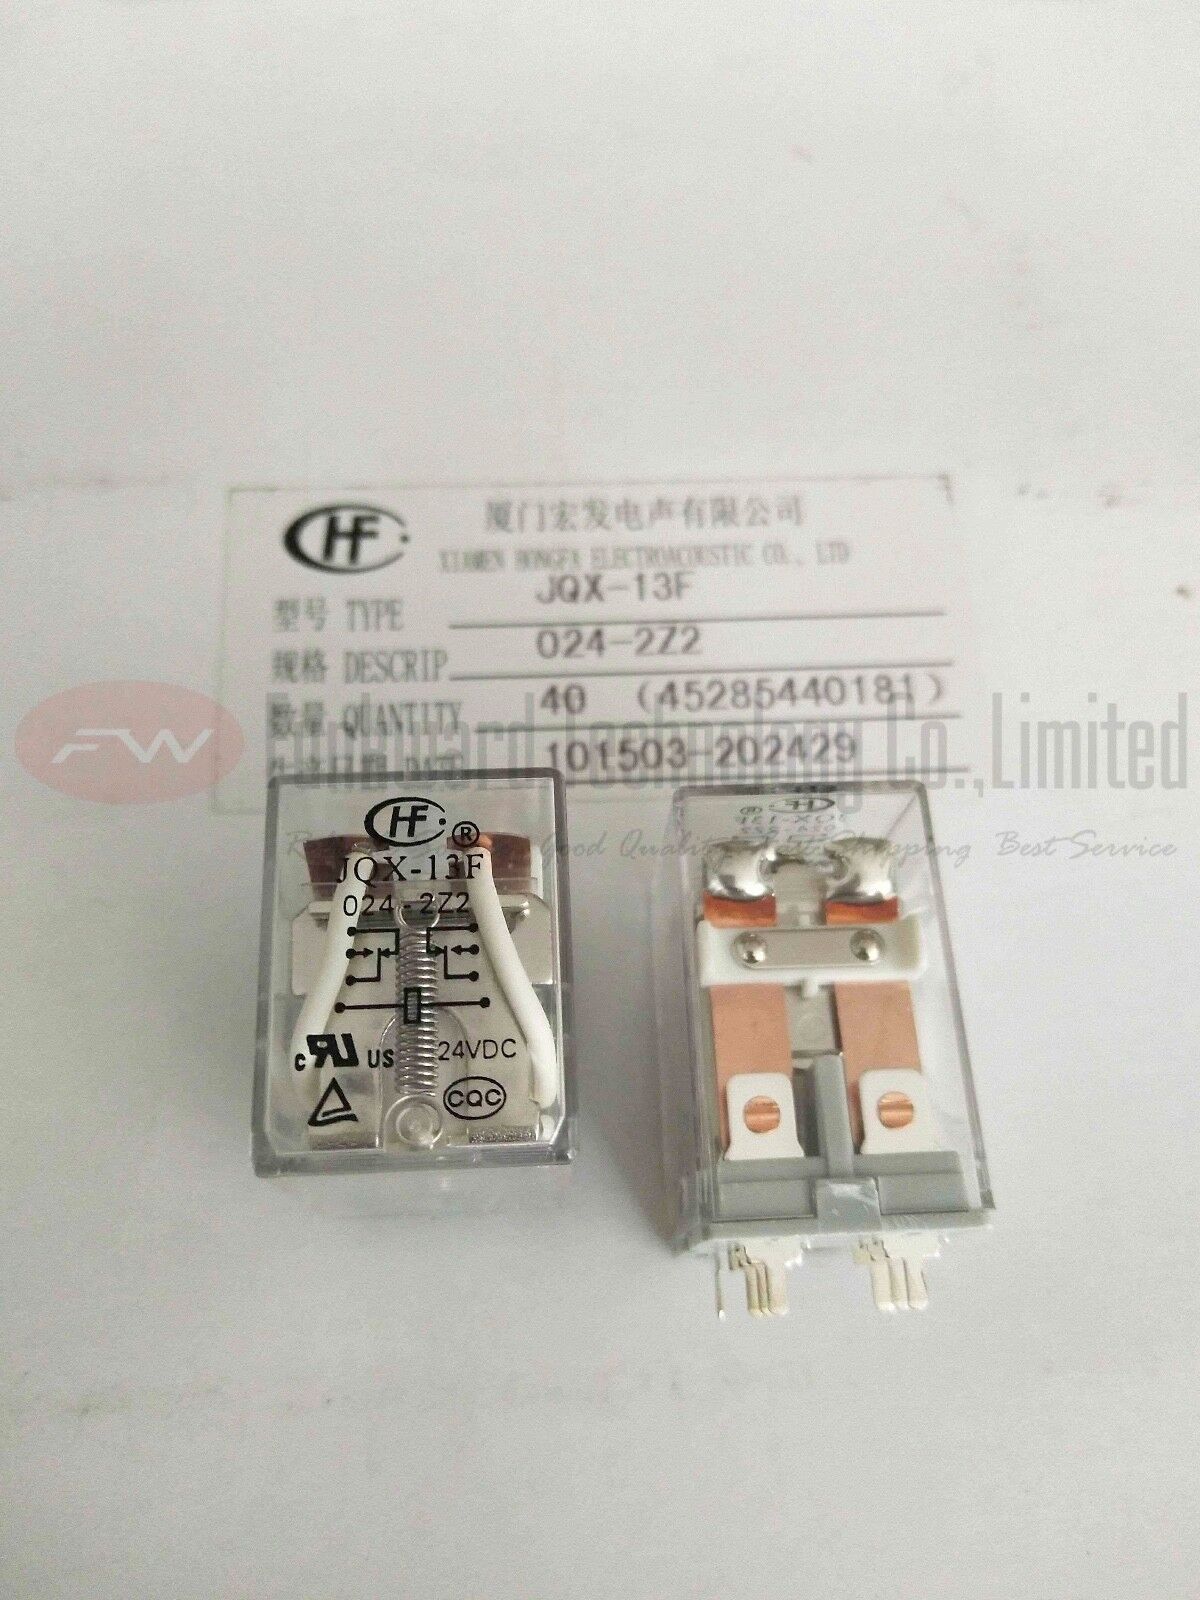 JQX-13F/024-2Z2 HF13F/024-2Z2 Intermediate Relay 10A 24VDC 8 Pins x 10pcs